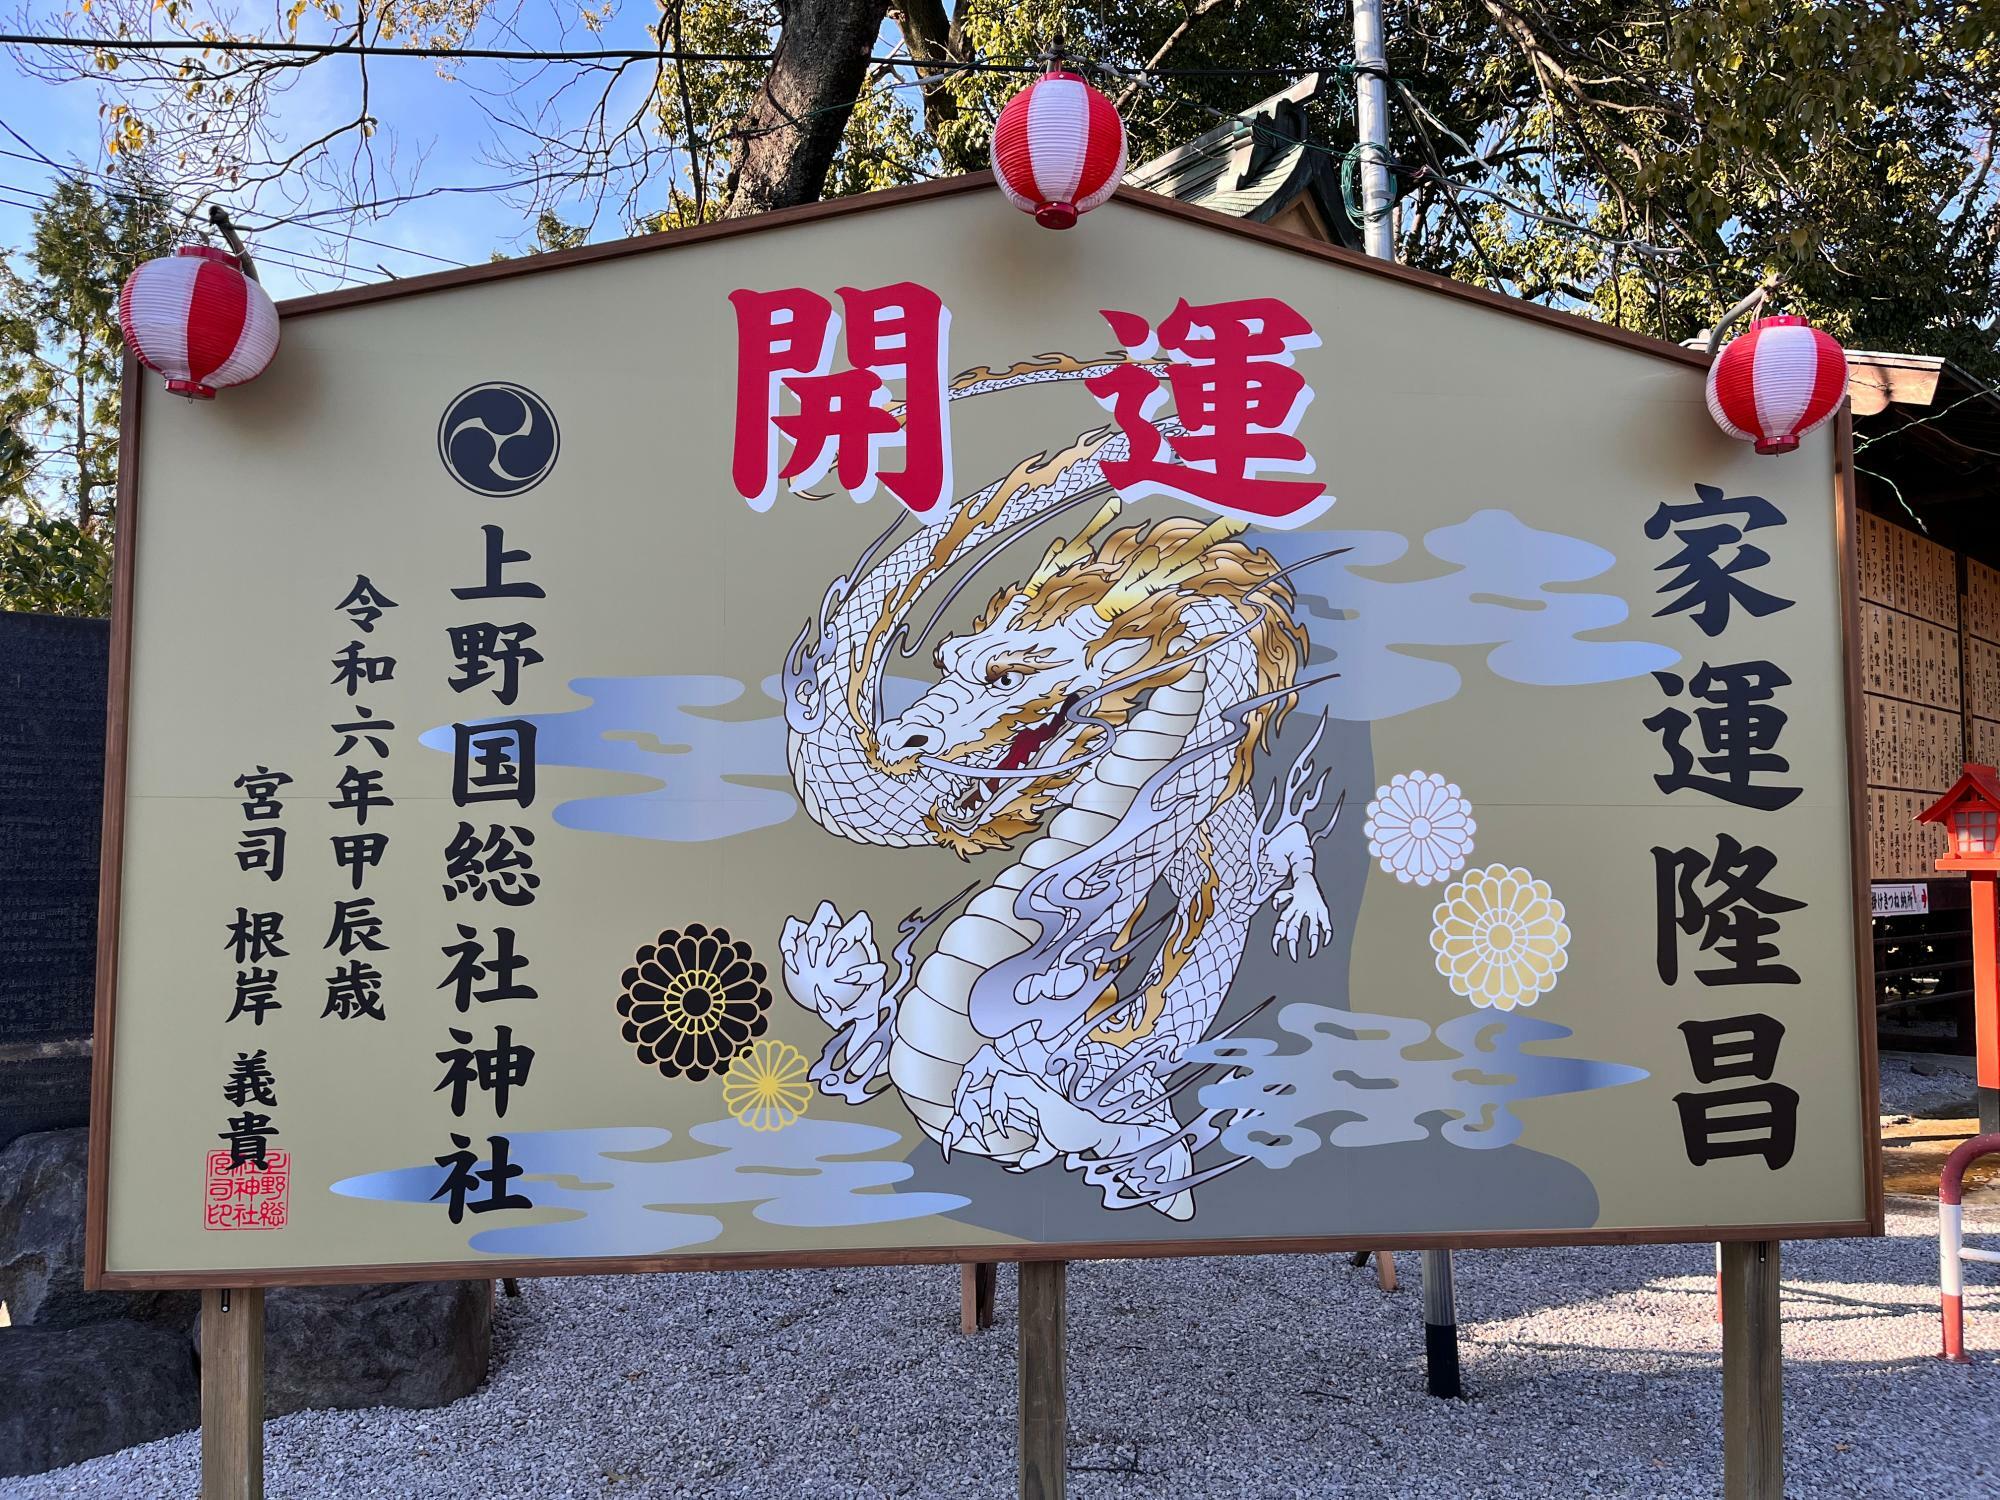 「上野國総鎮守 総社神社」境内の「開運」看板の様子